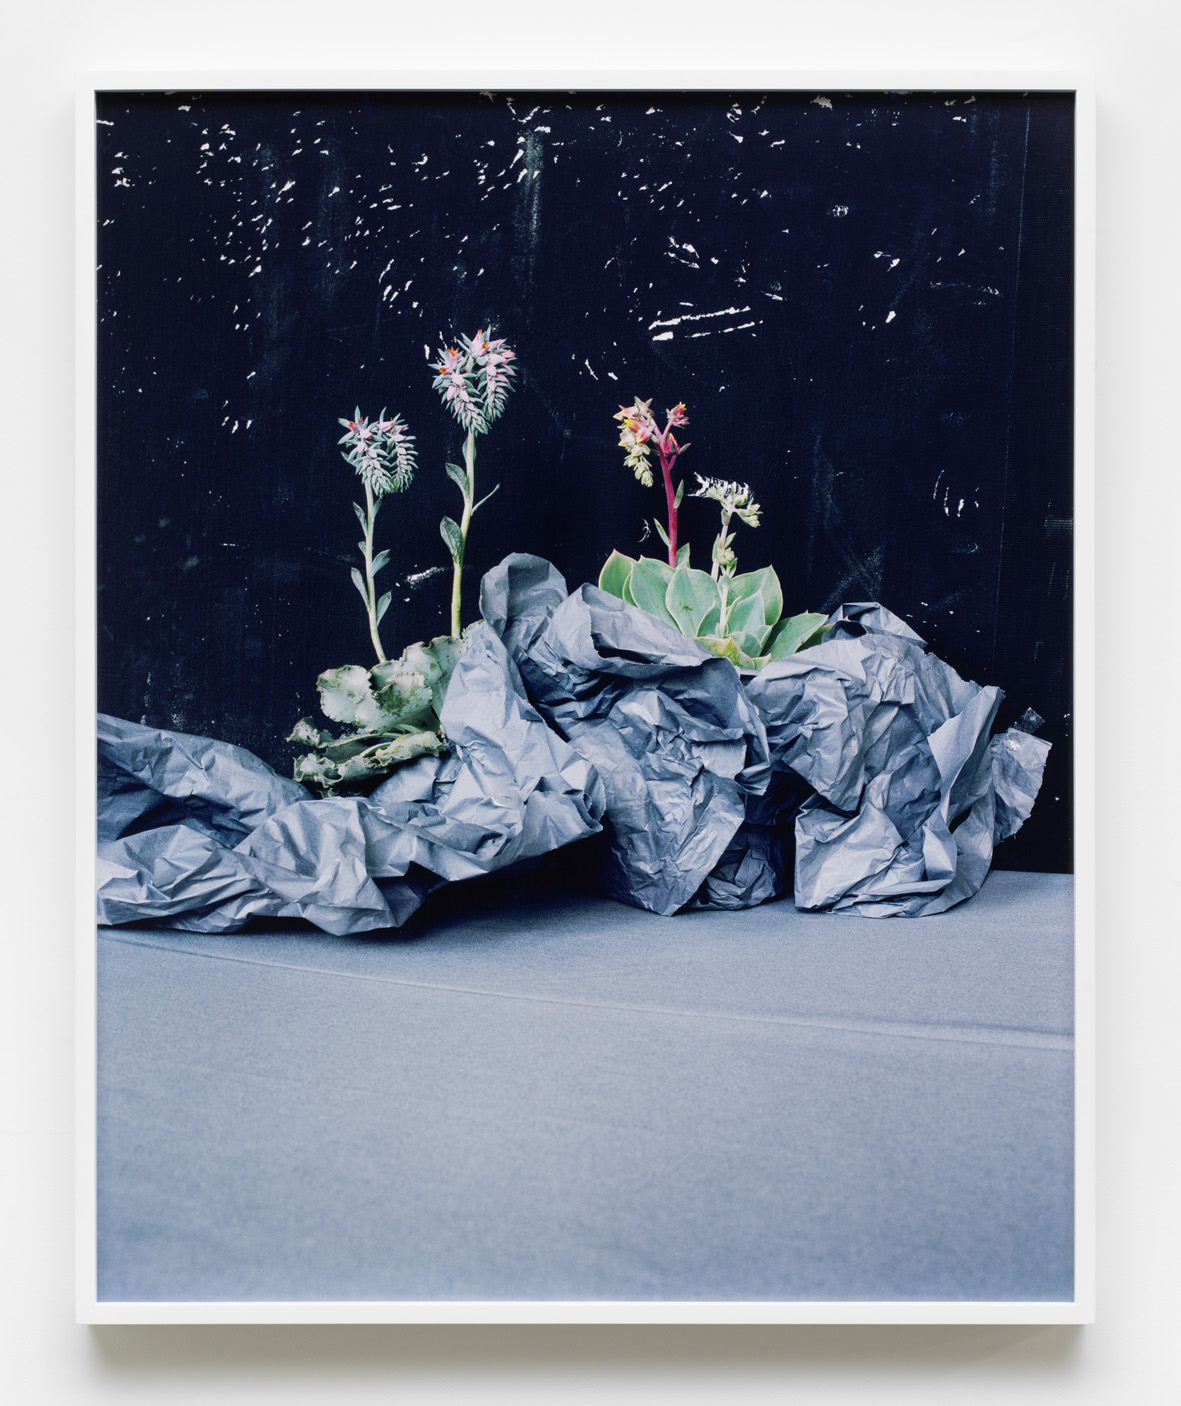     Desert Plants 2016 Archival pigment print, framed 86 x 70 cm / 33.8 x 27.5 in 